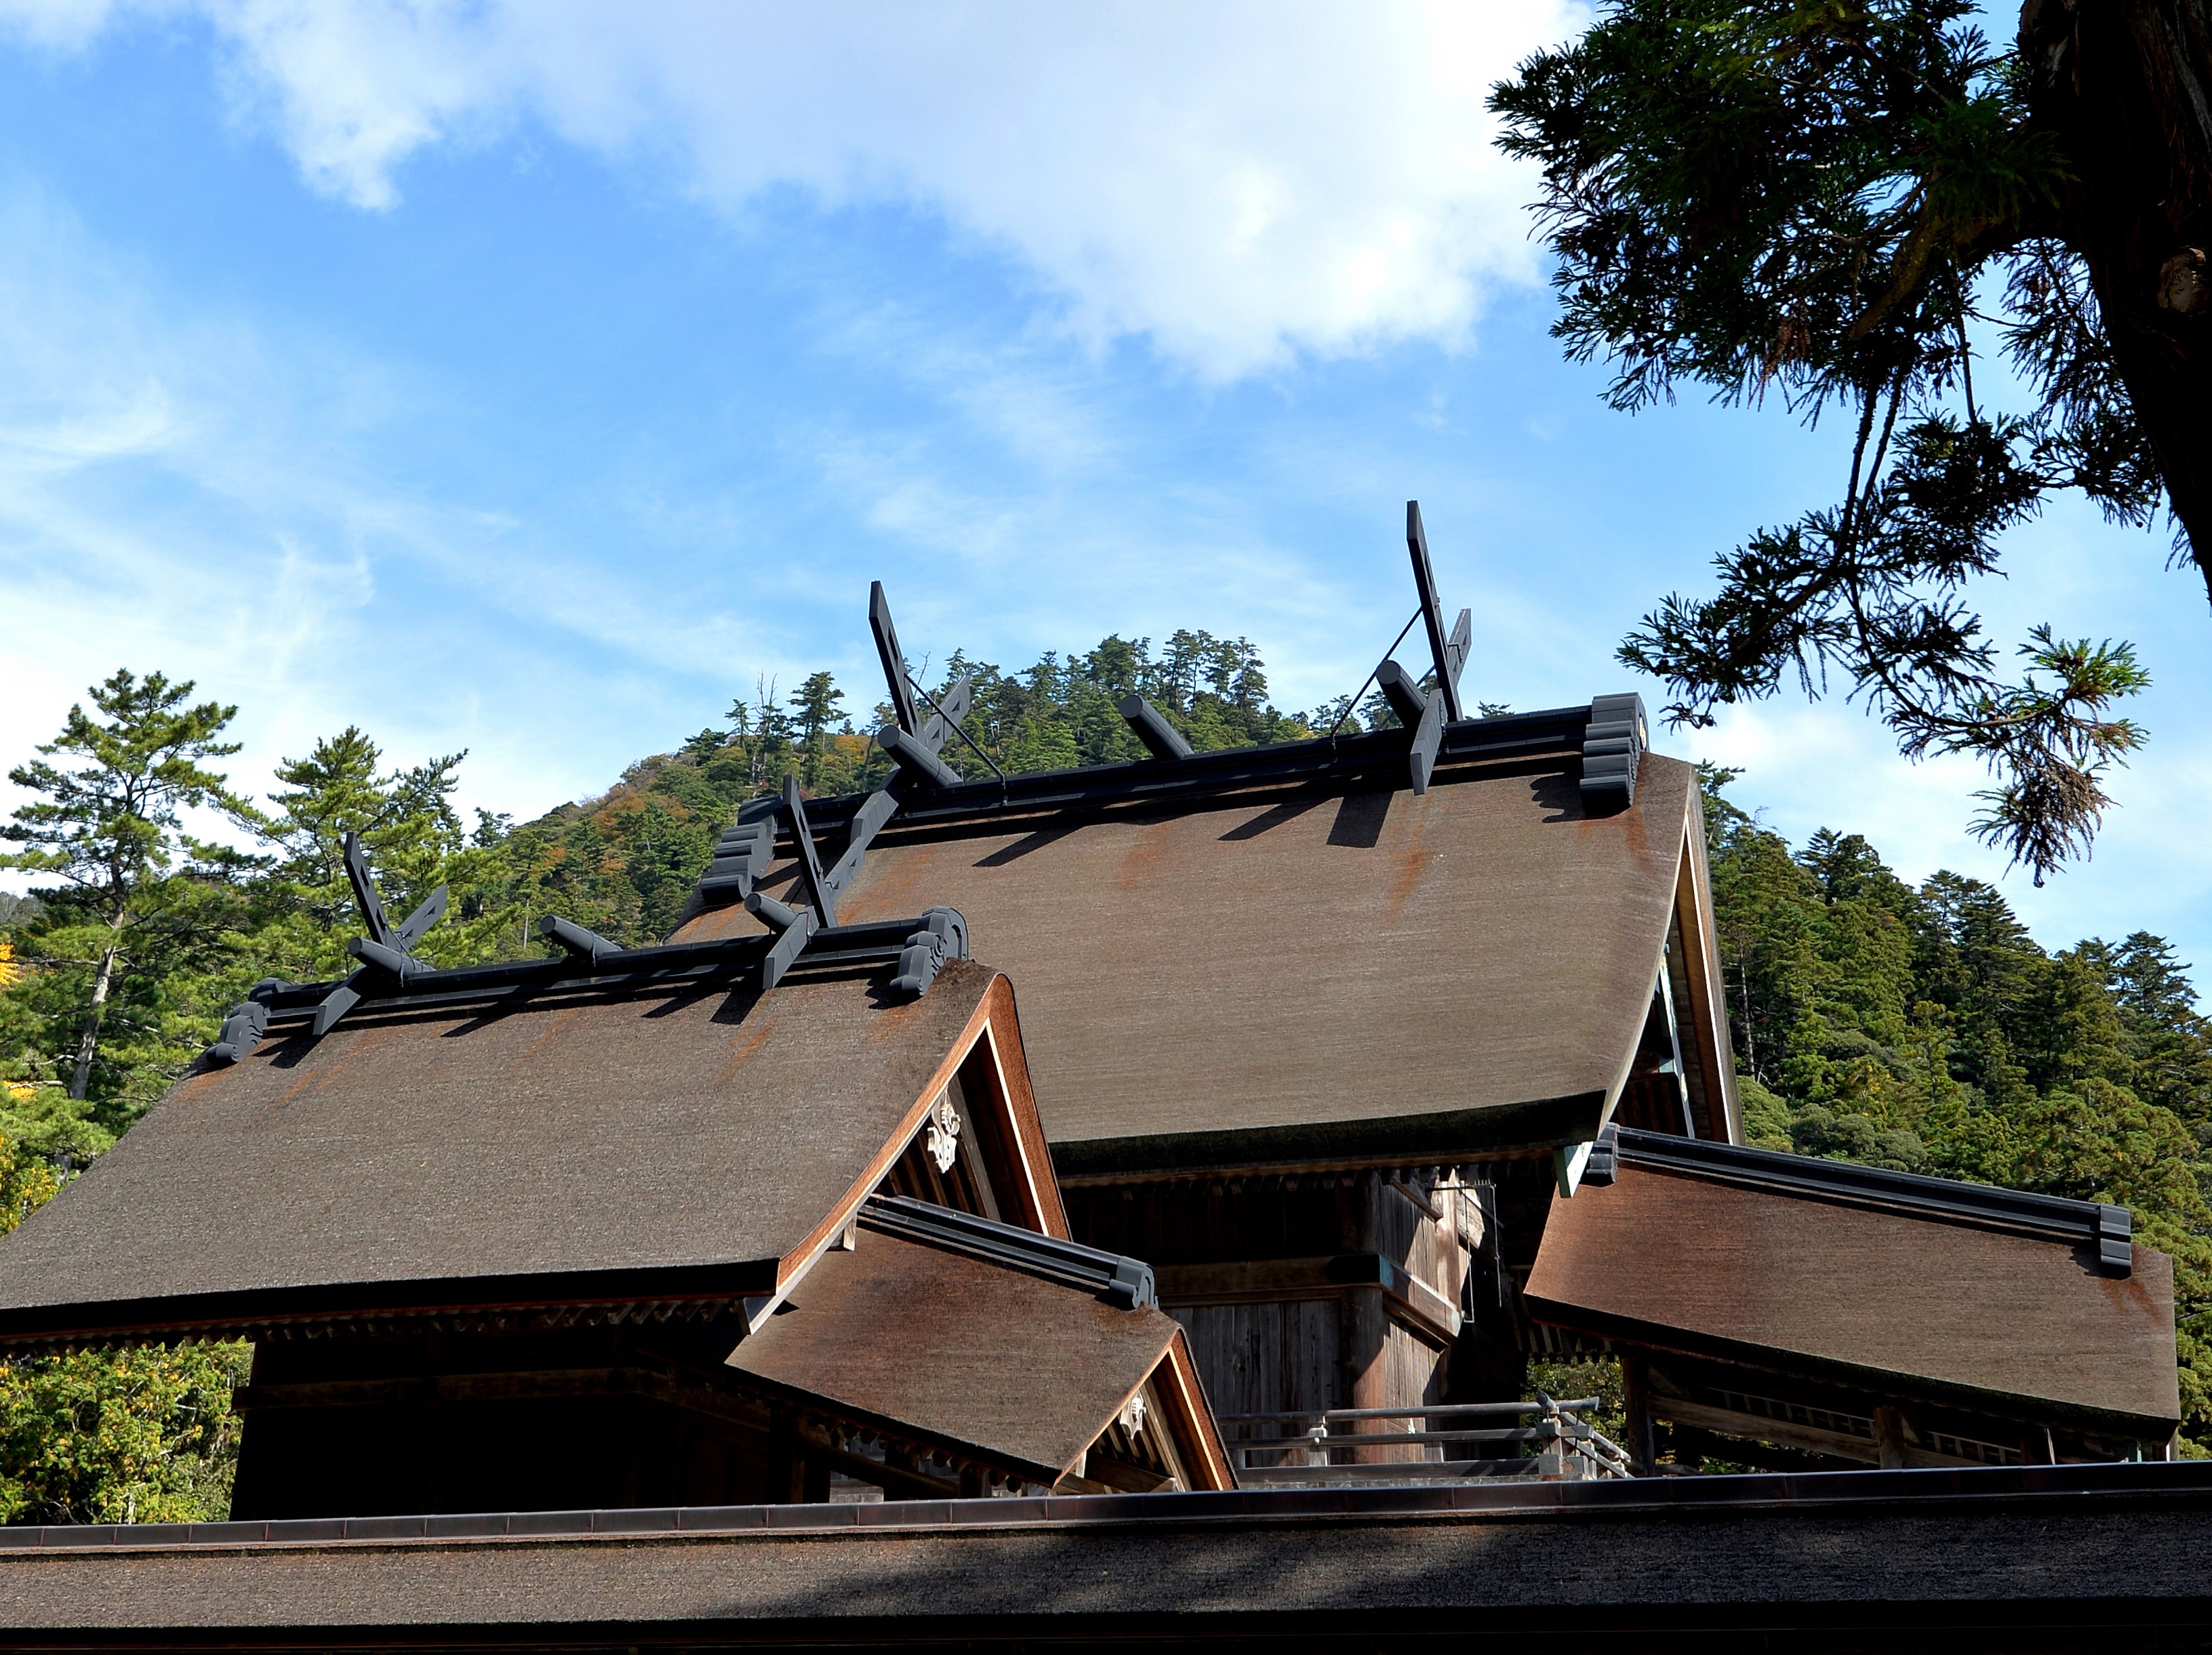 出雲大社本殿は屋根の大きな千木が印象的。写真手前の社にはタギリヒメノミコトが祀られる。